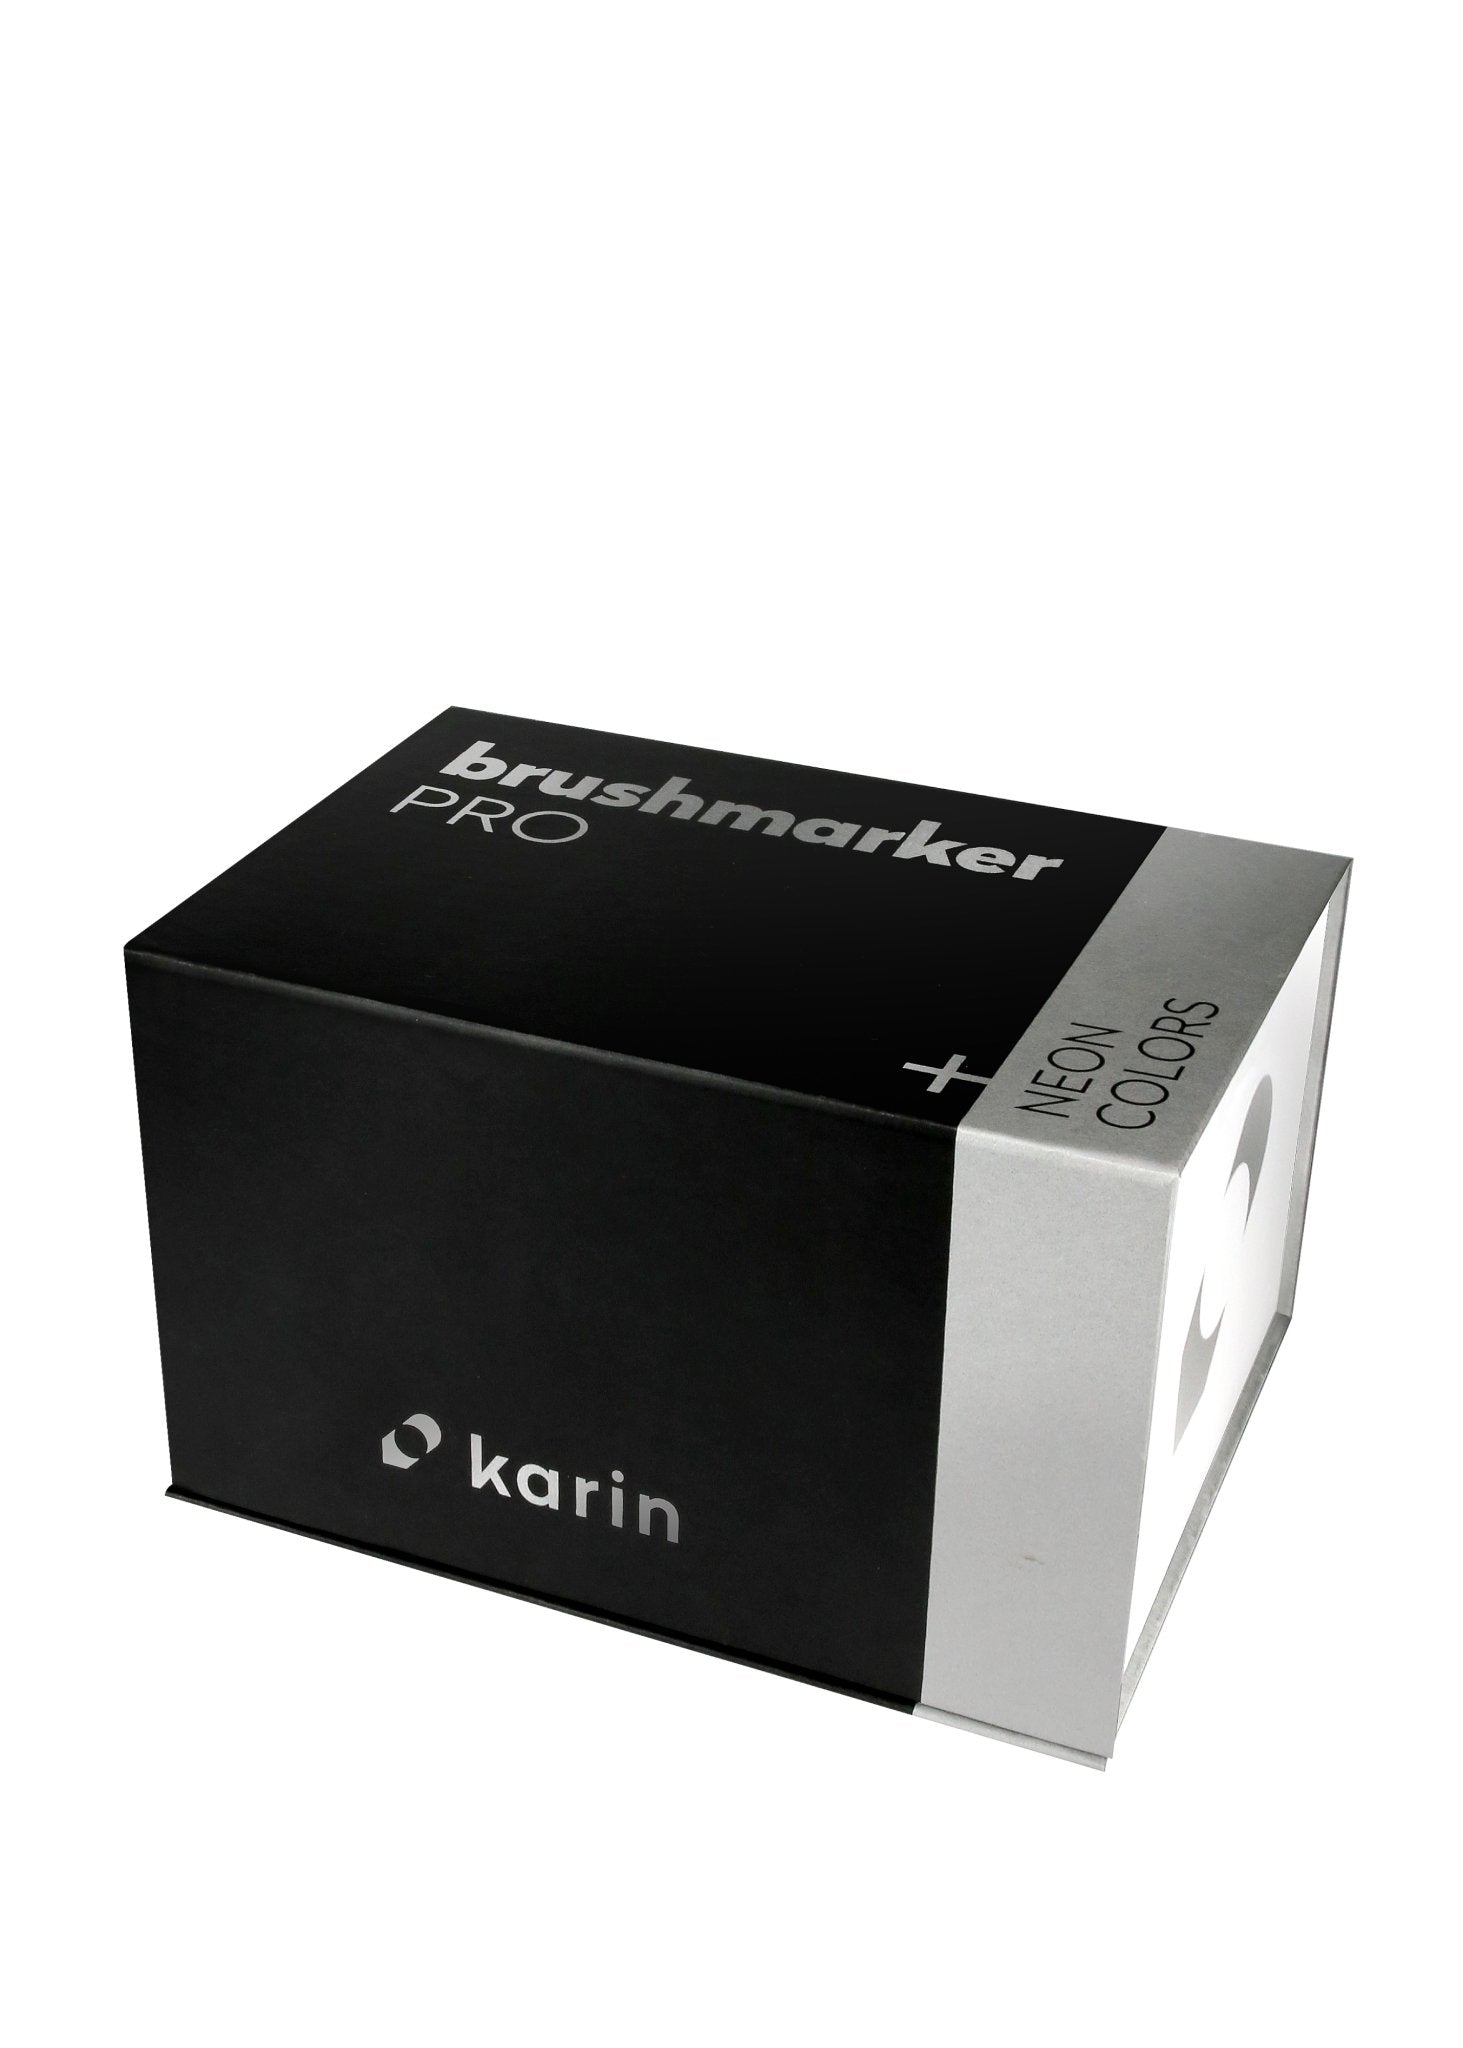 Karin Brushmarker PRO - Mega Box PLUS - 72 Colours + 3 Blender Set - Create A Little Magic (Pty) Ltd